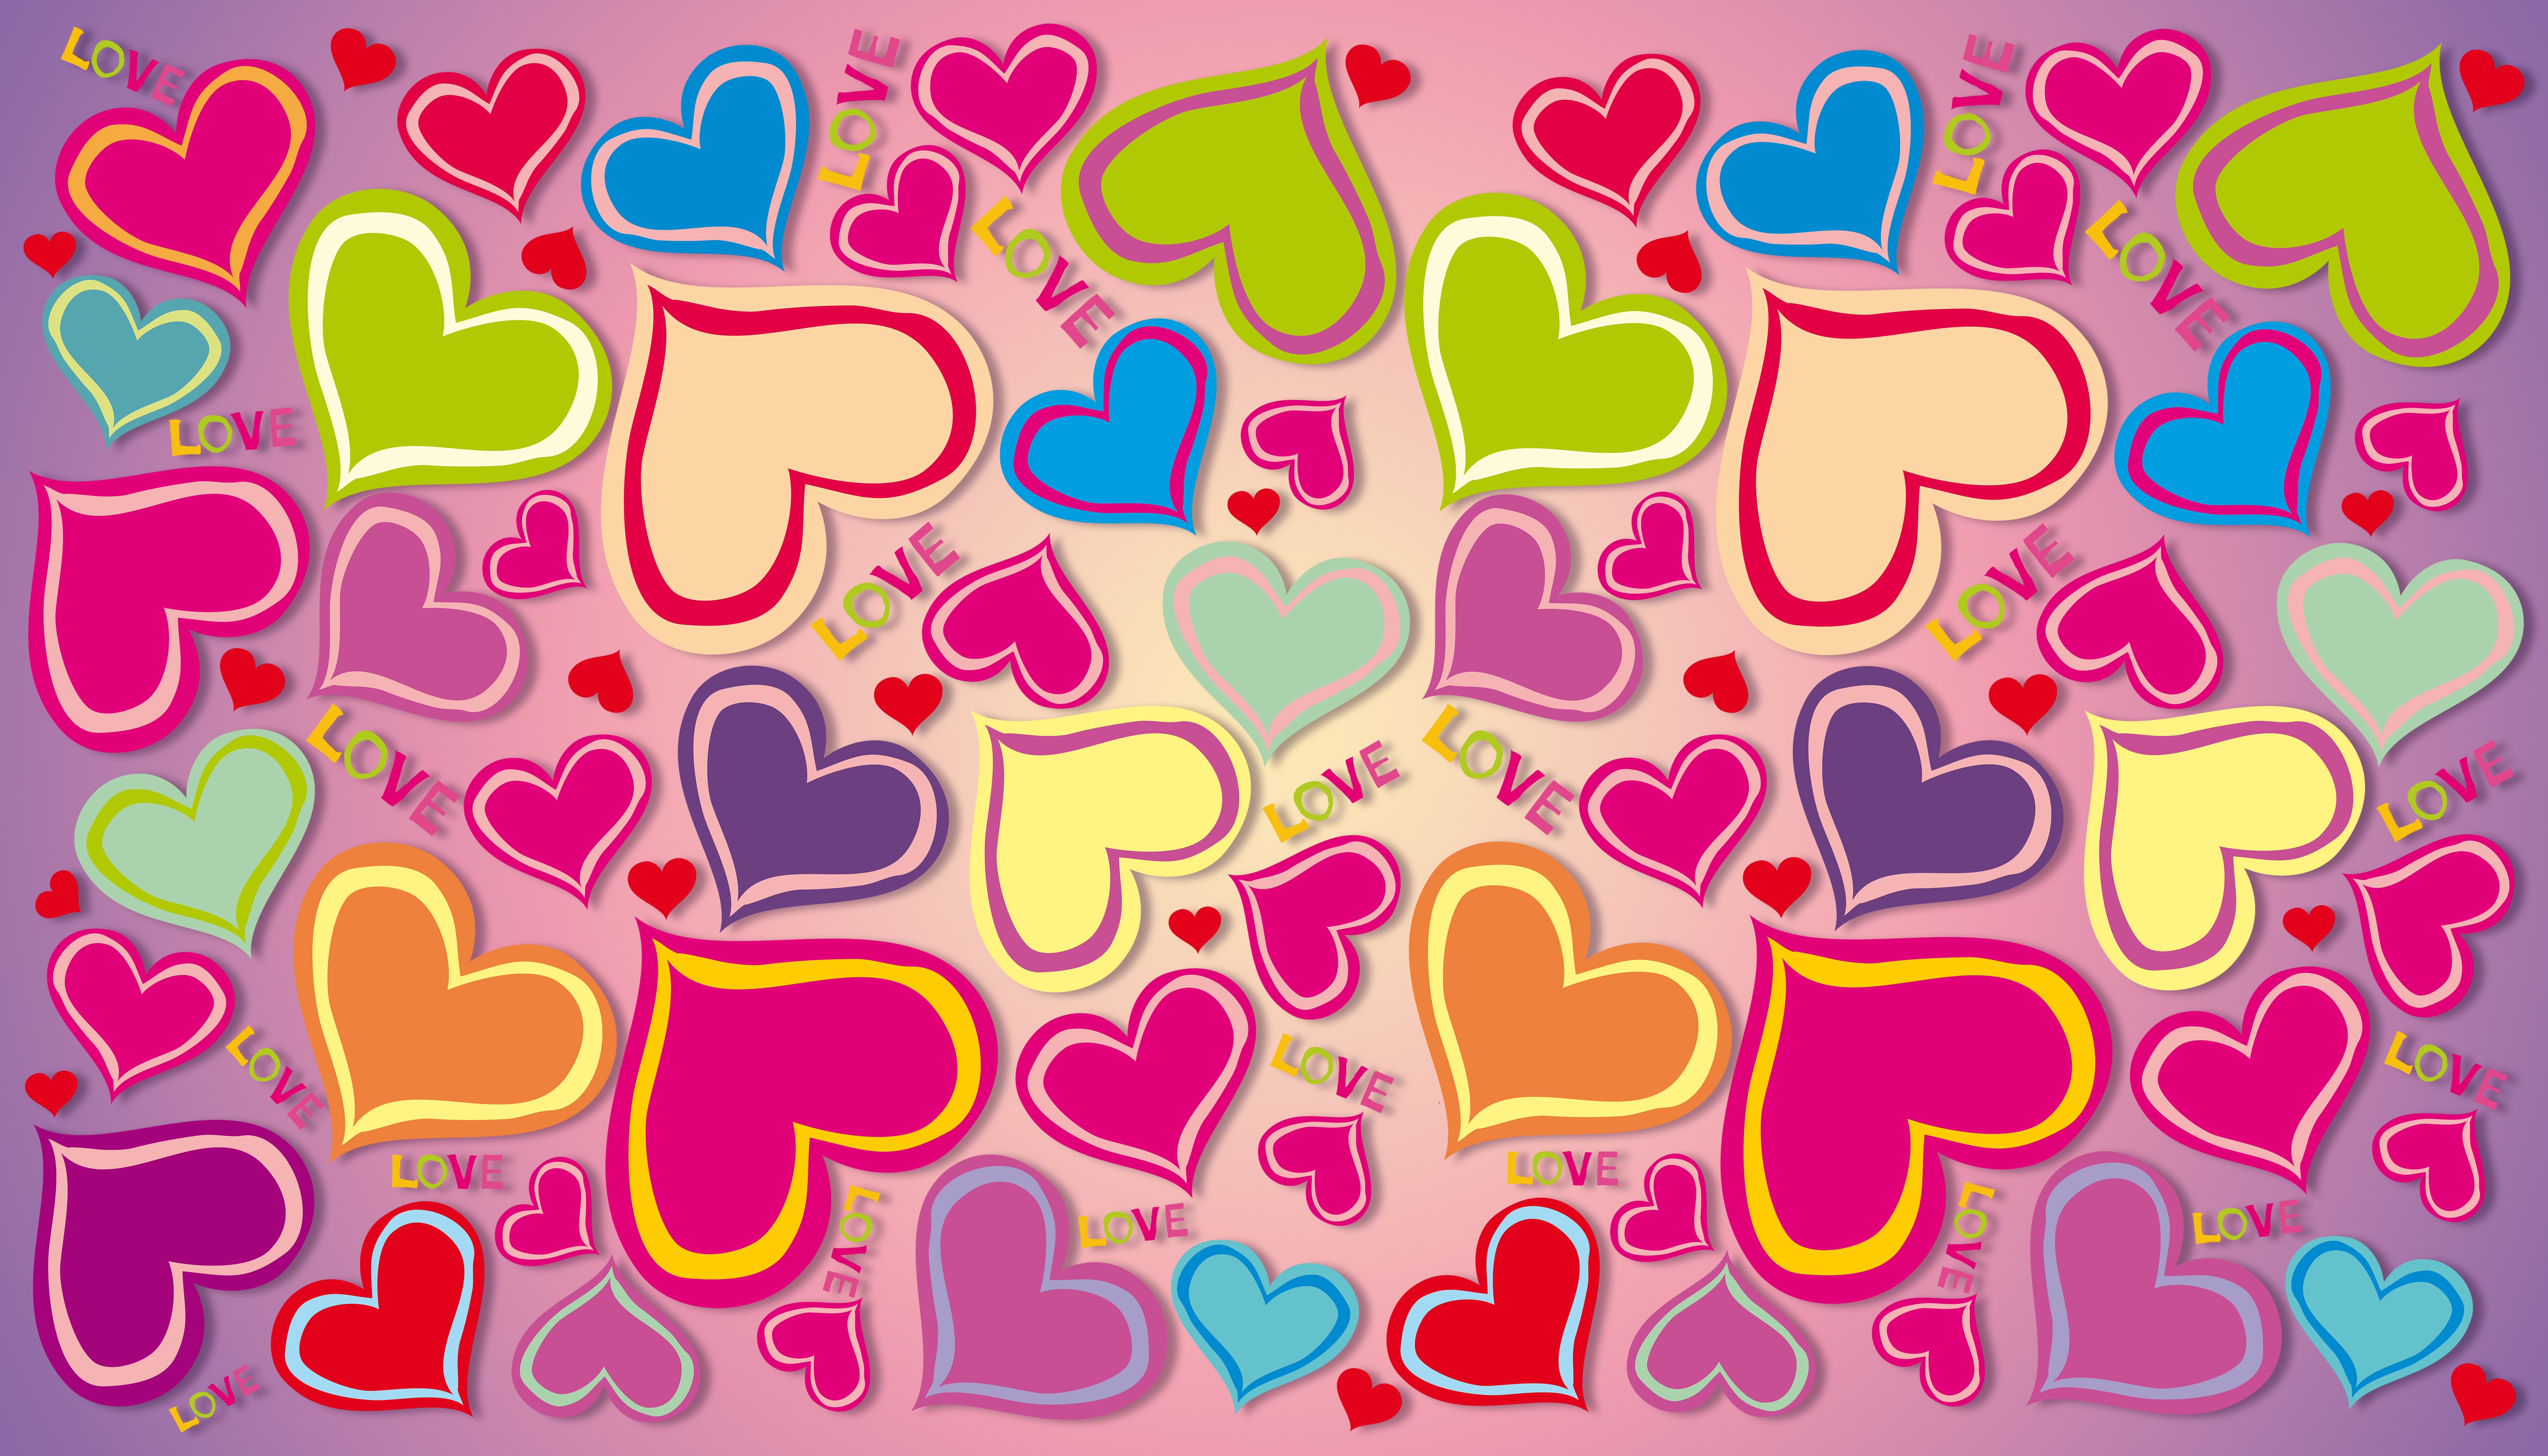 General 7000x4000 love heart (design) artwork colorful digital art